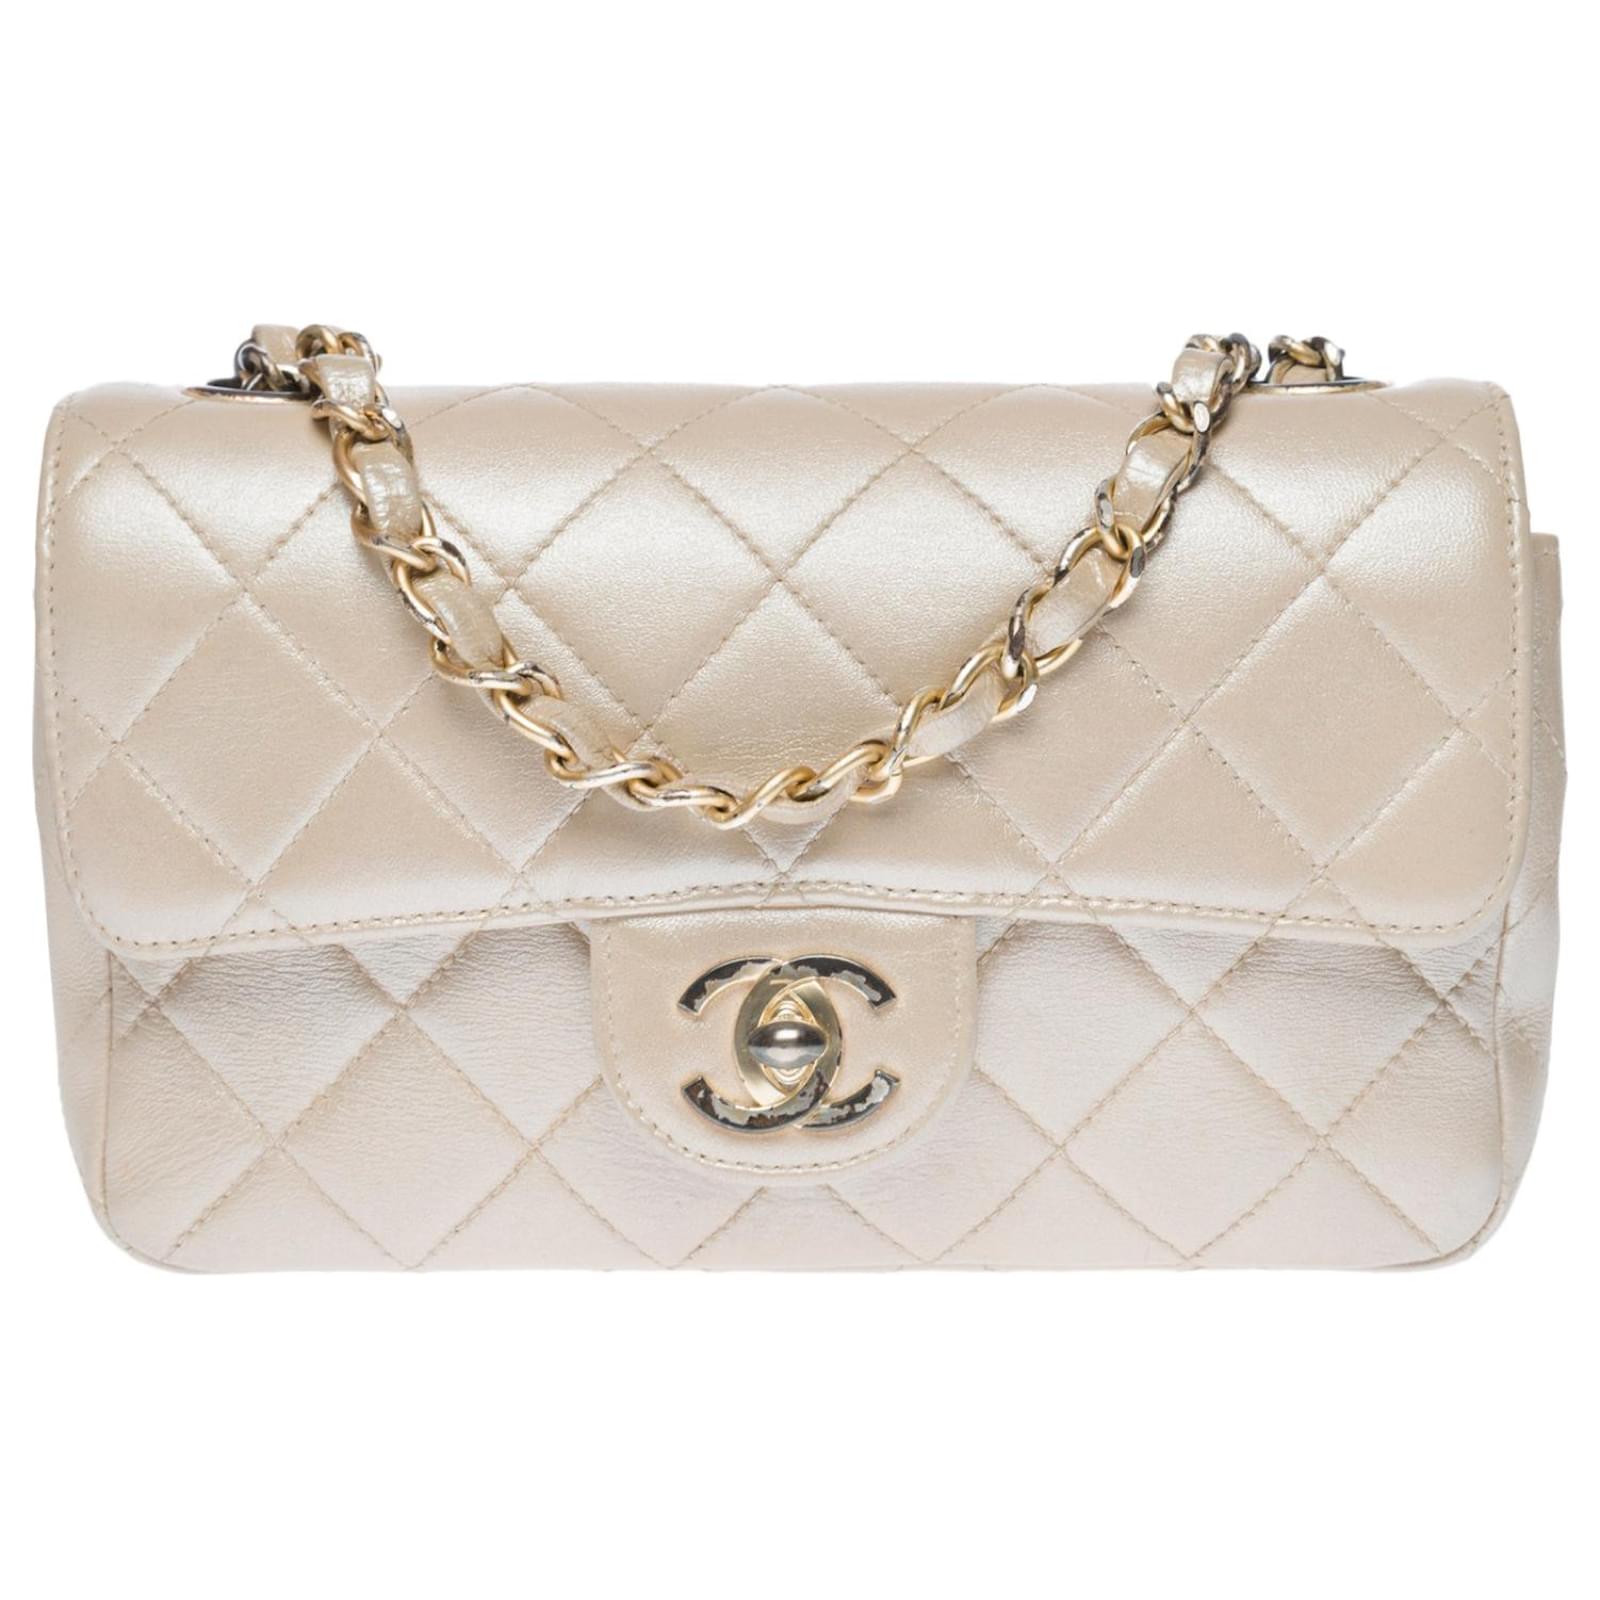 Seltene Chanel Timeless Mini Flap Bag Handtasche aus gestepptem